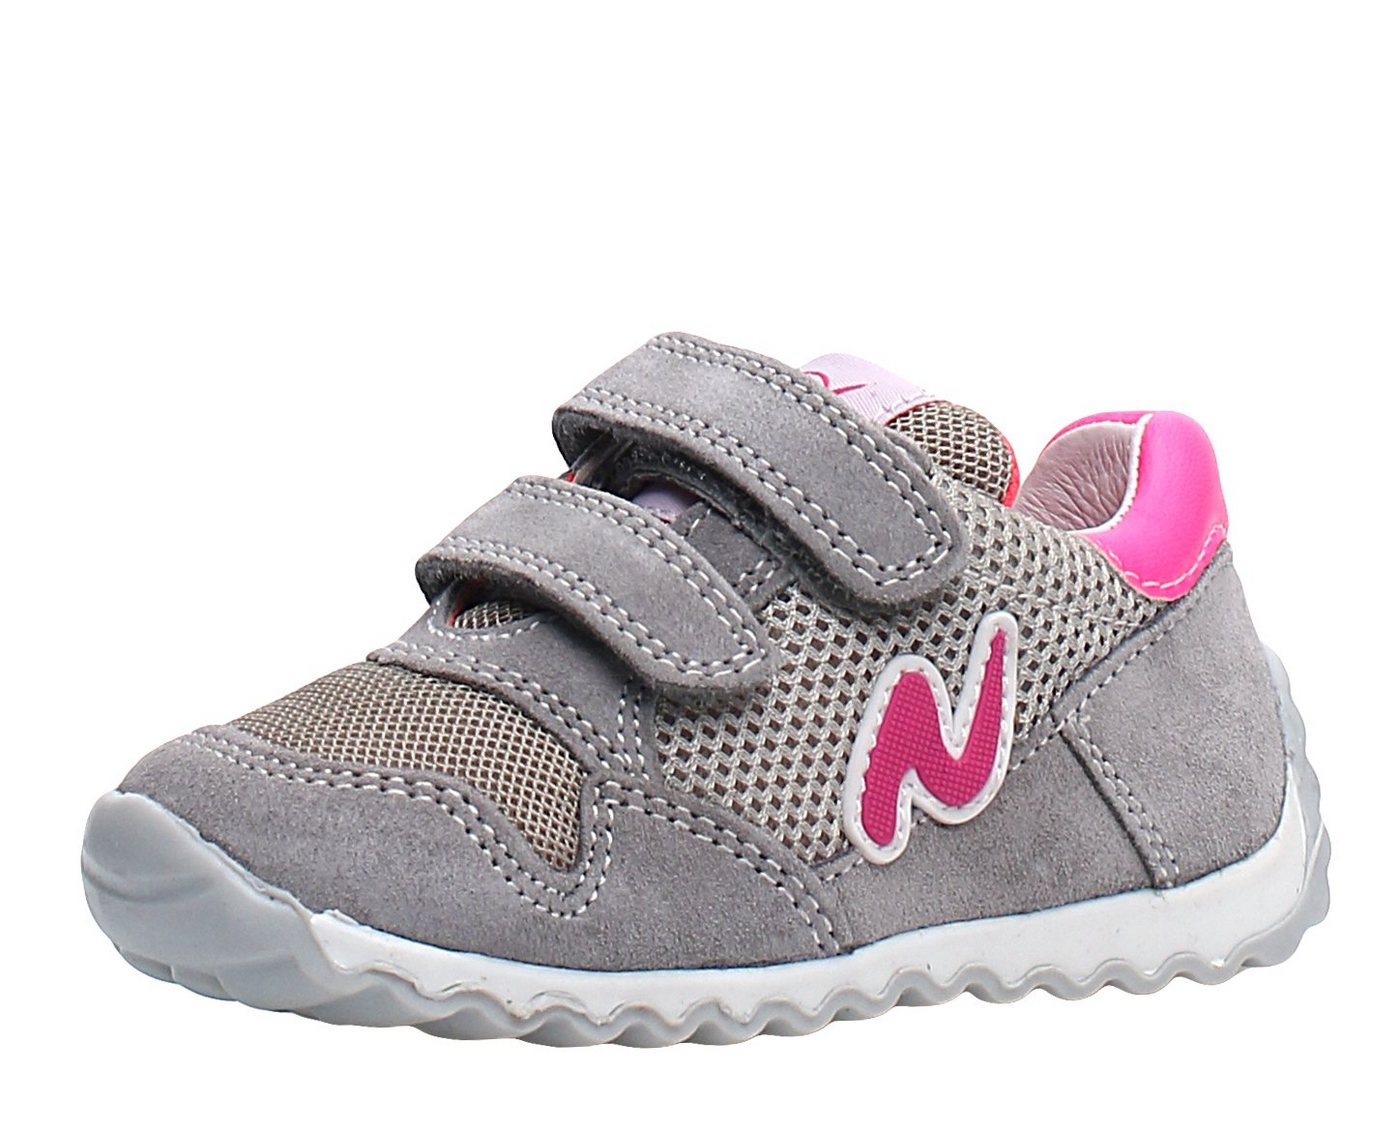 Naturino Naturino Sneaker Sammy für Mädchen mit Lederfutter 1B43 Grau Sneaker von Naturino